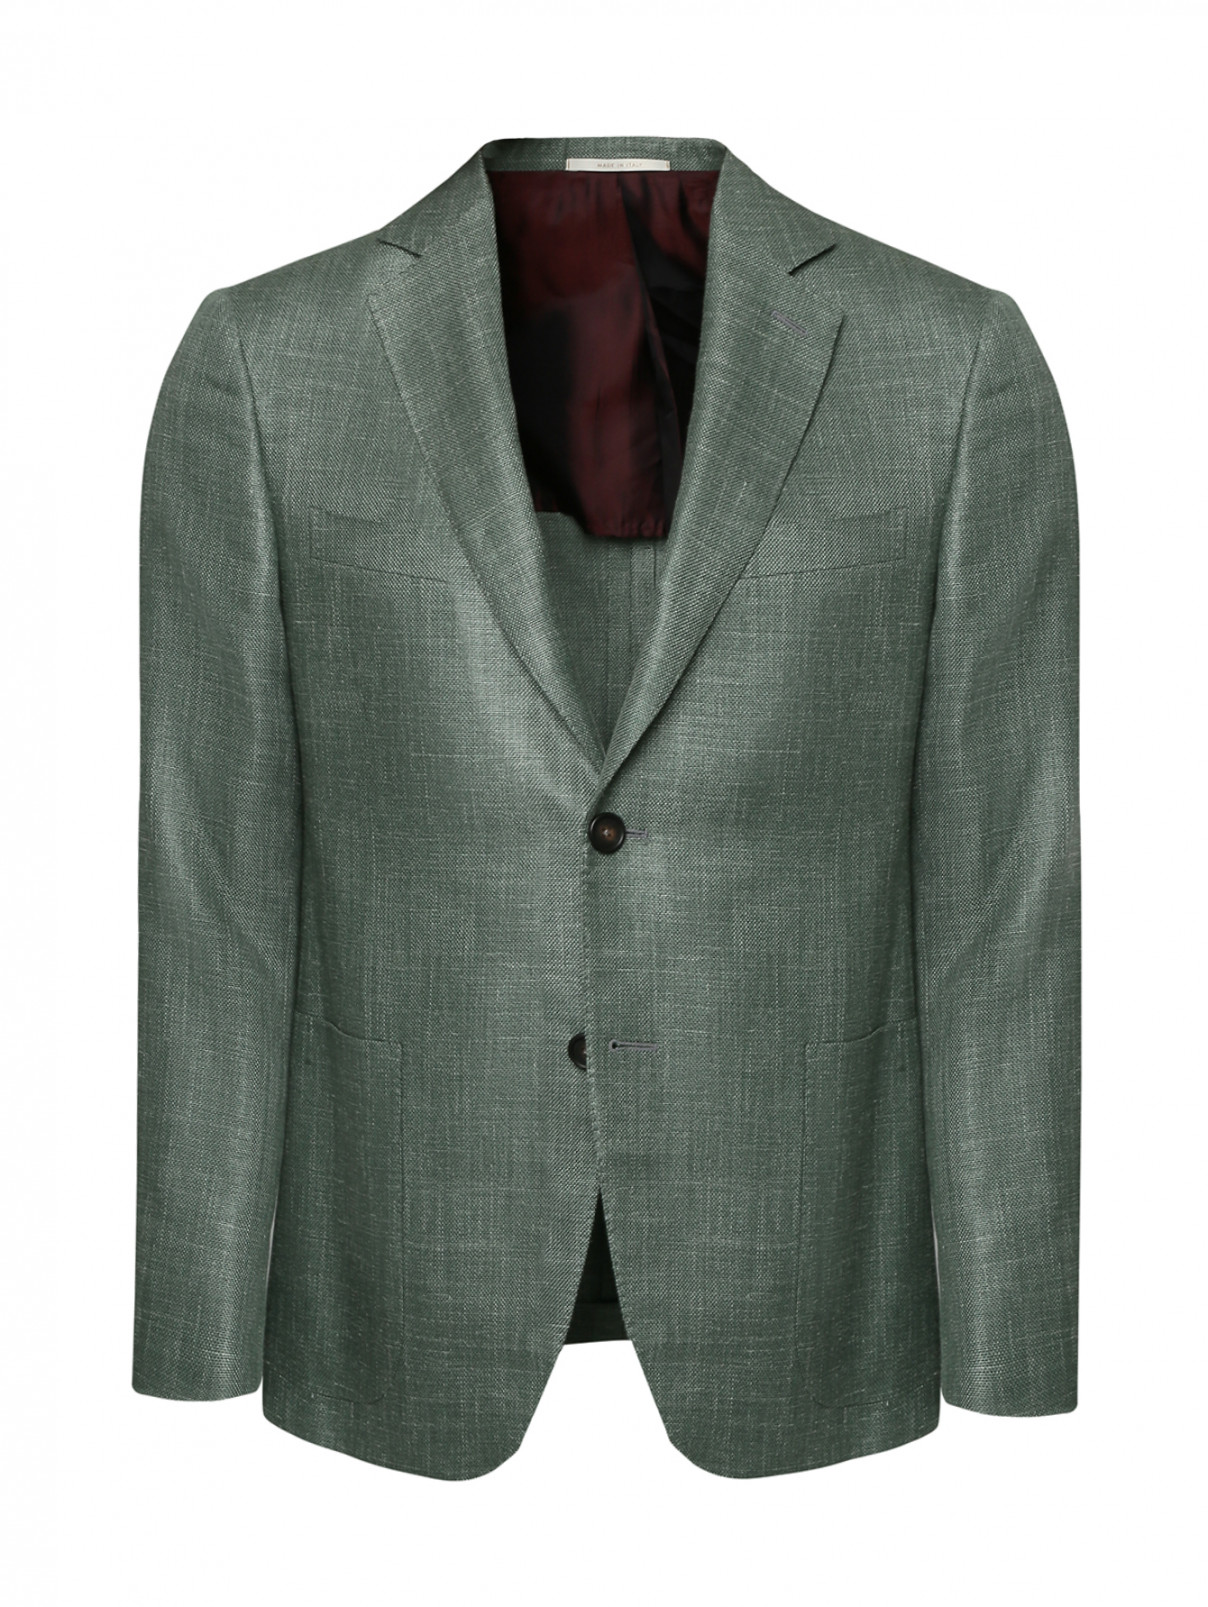 Пиджак из шерсти и шелка с накладными карманами Pal Zileri  –  Общий вид  – Цвет:  Зеленый